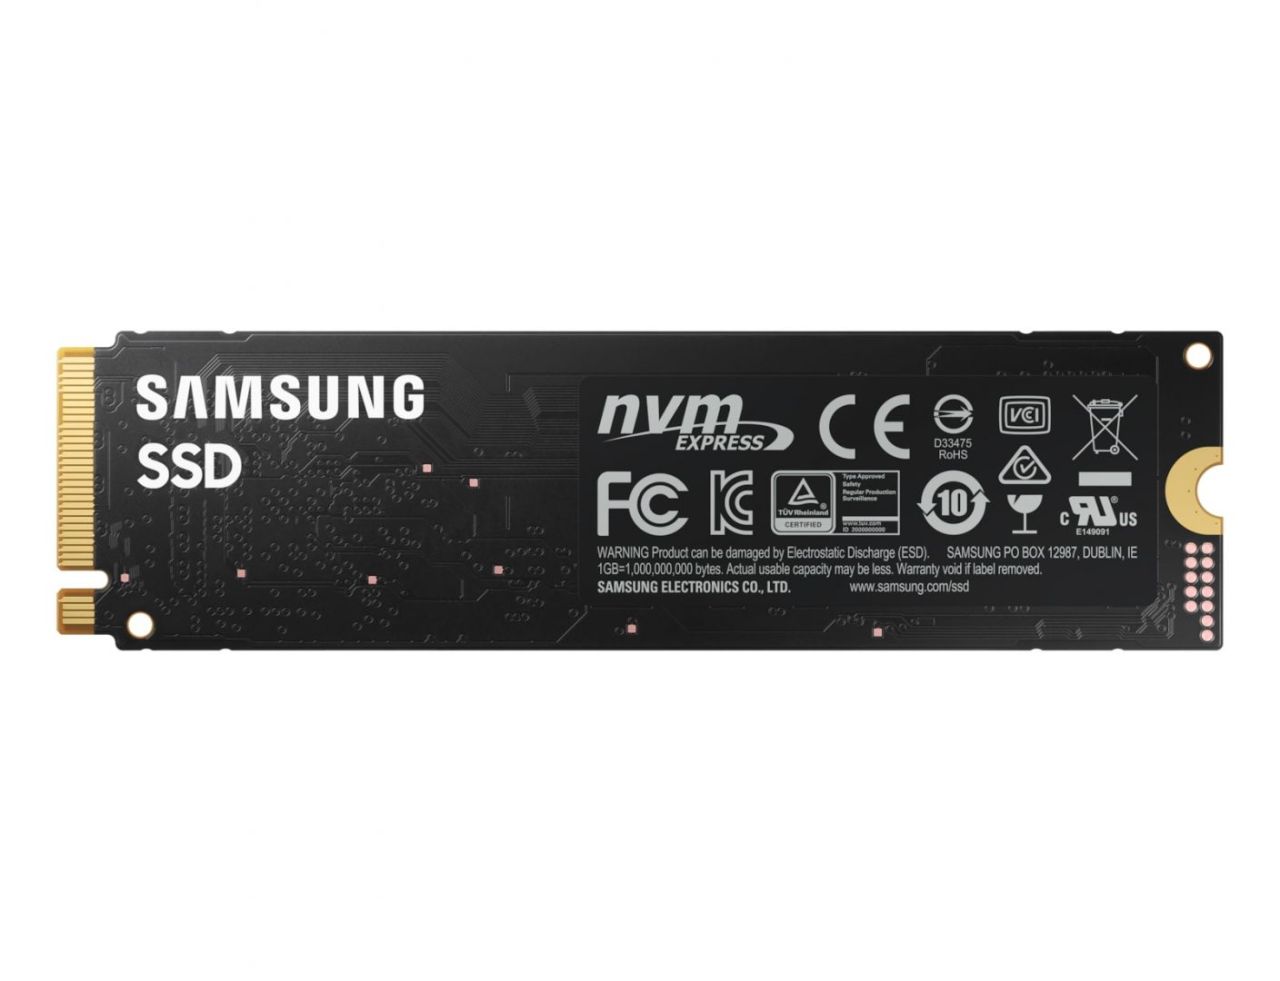 Samsung 250GB M.2 2280 NVMe 980 Basic